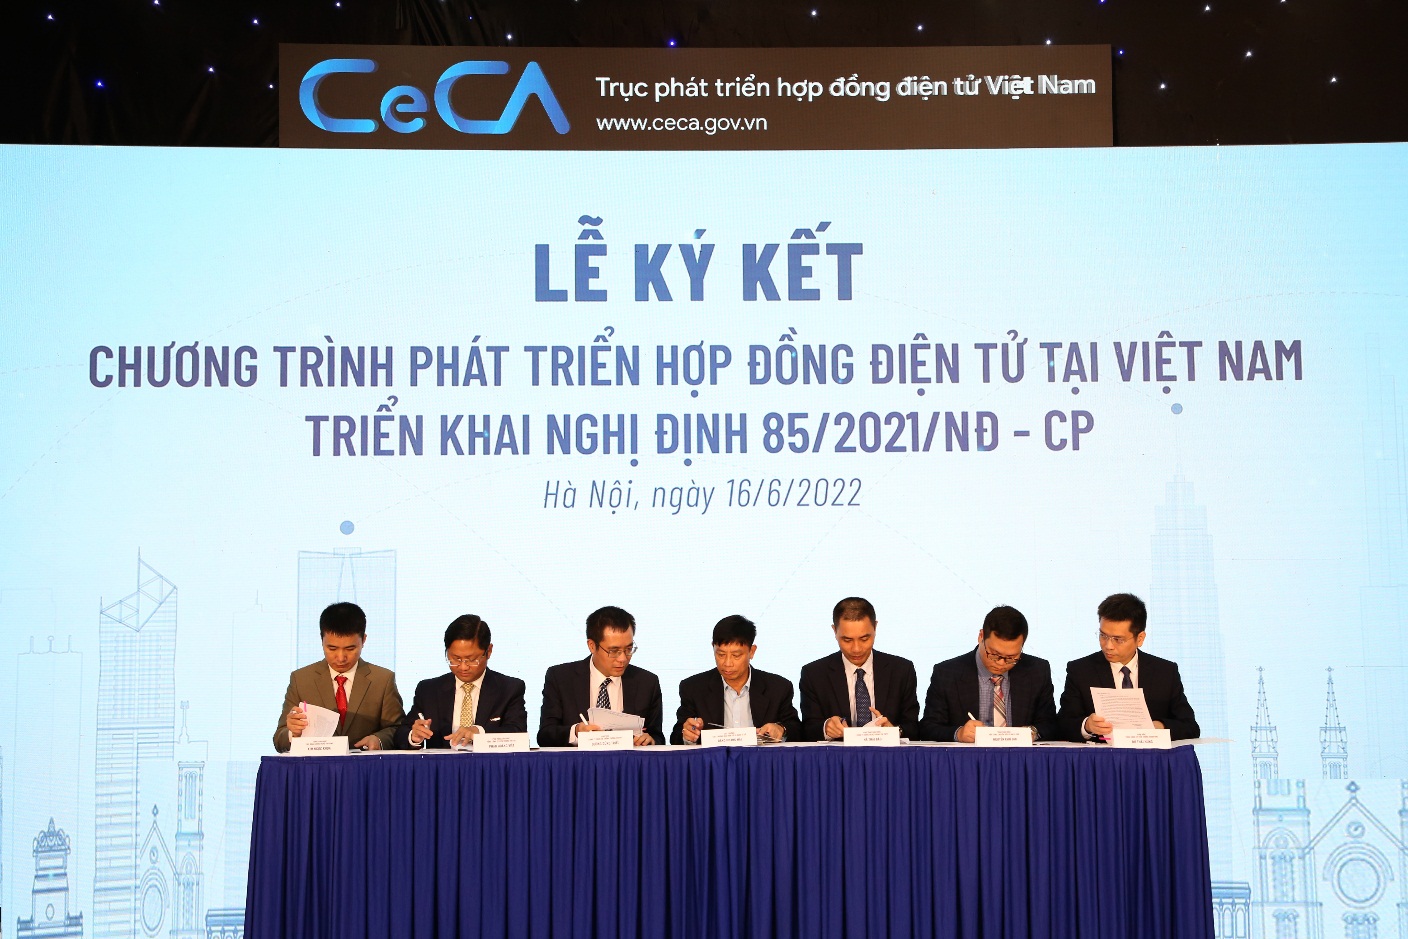 VNPT eContract chính thức liên kết lên Trục phát triển Hợp đồng điện tử Việt Nam - Ảnh 2.